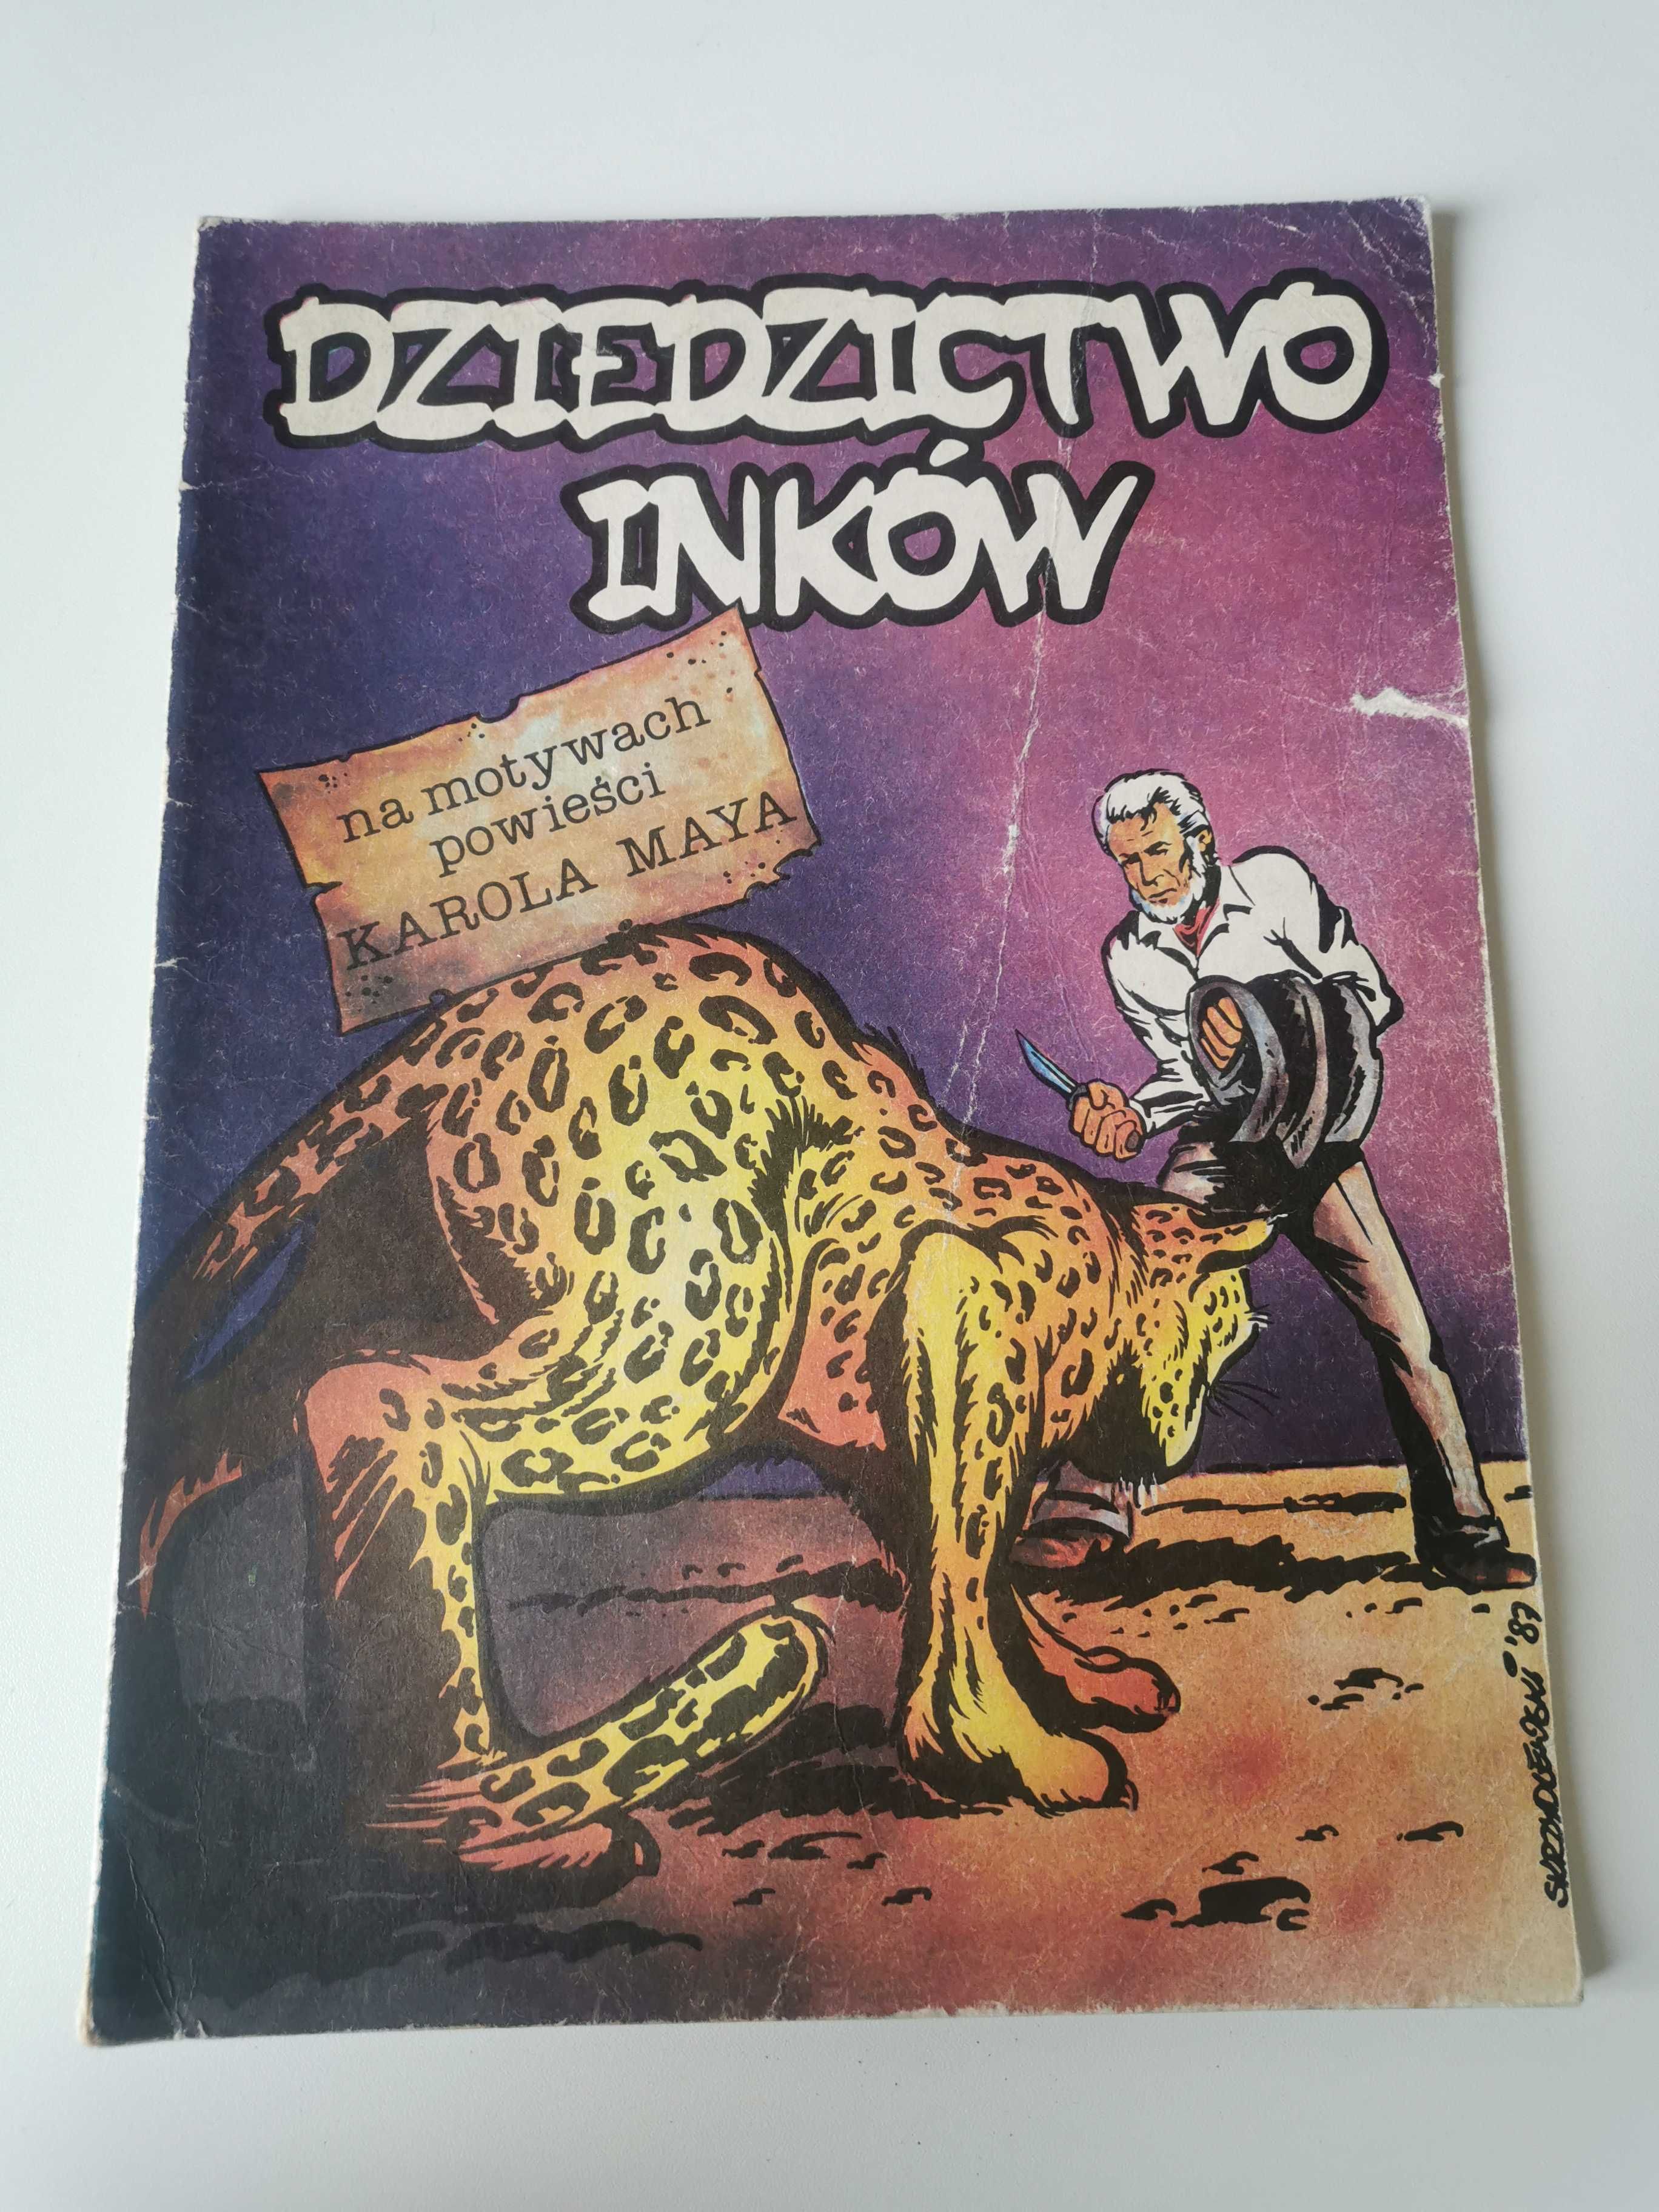 Komiks "Dziedzictwo Inków" (wg Karola Maya) '88 r.